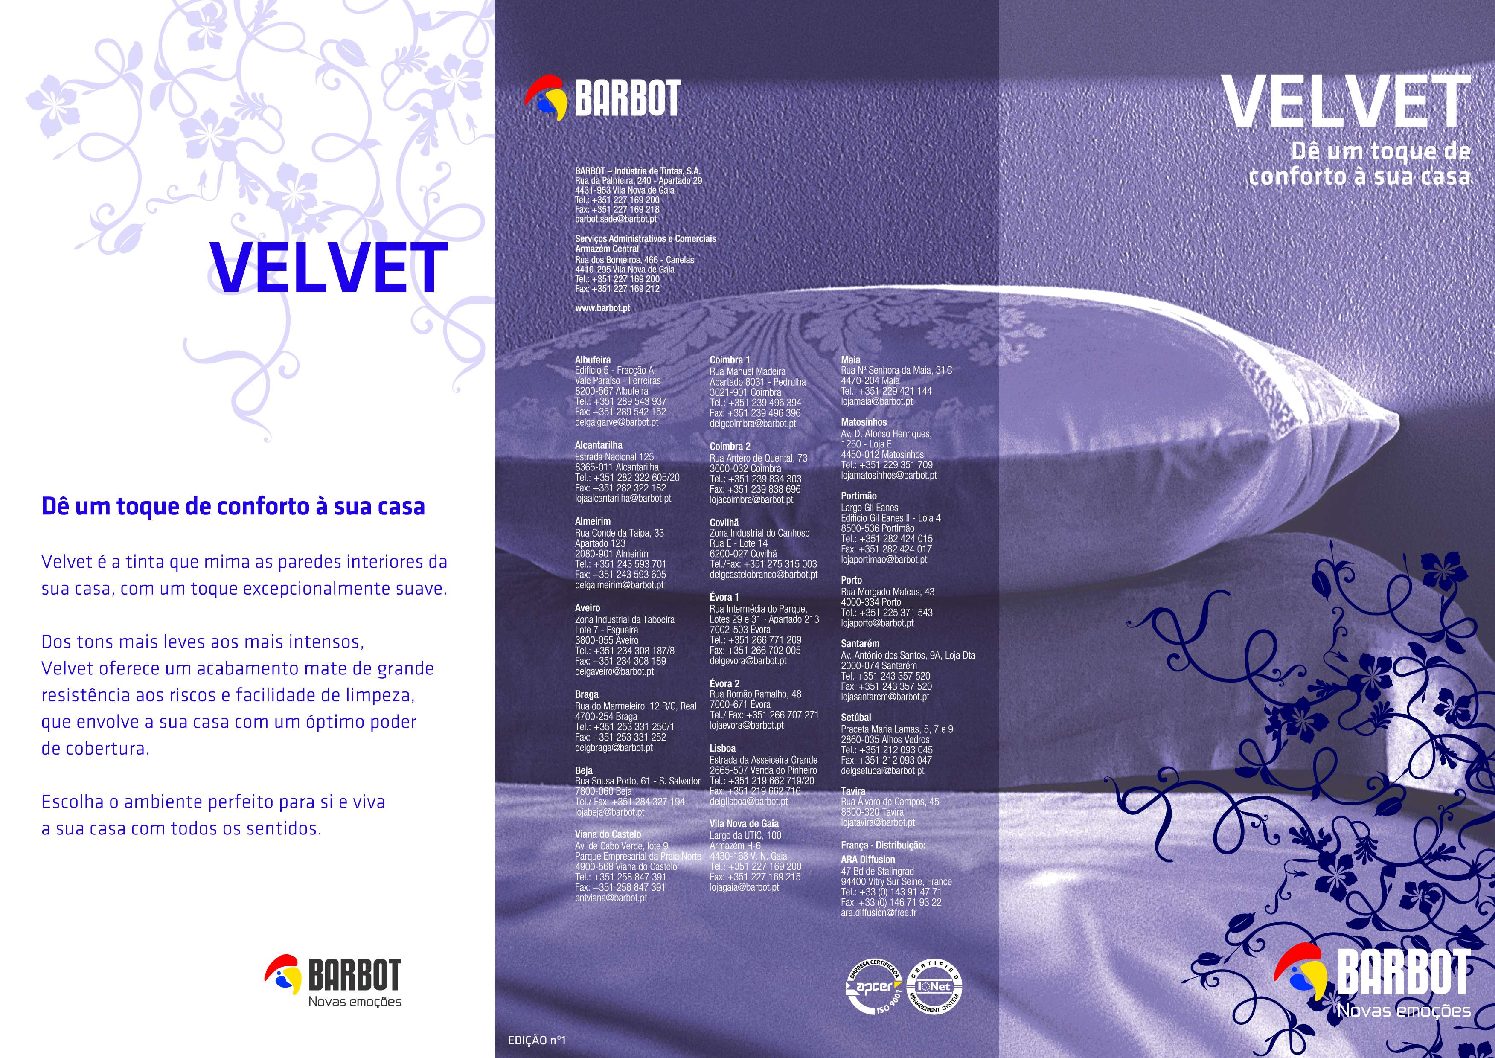 Barbot - Velvet